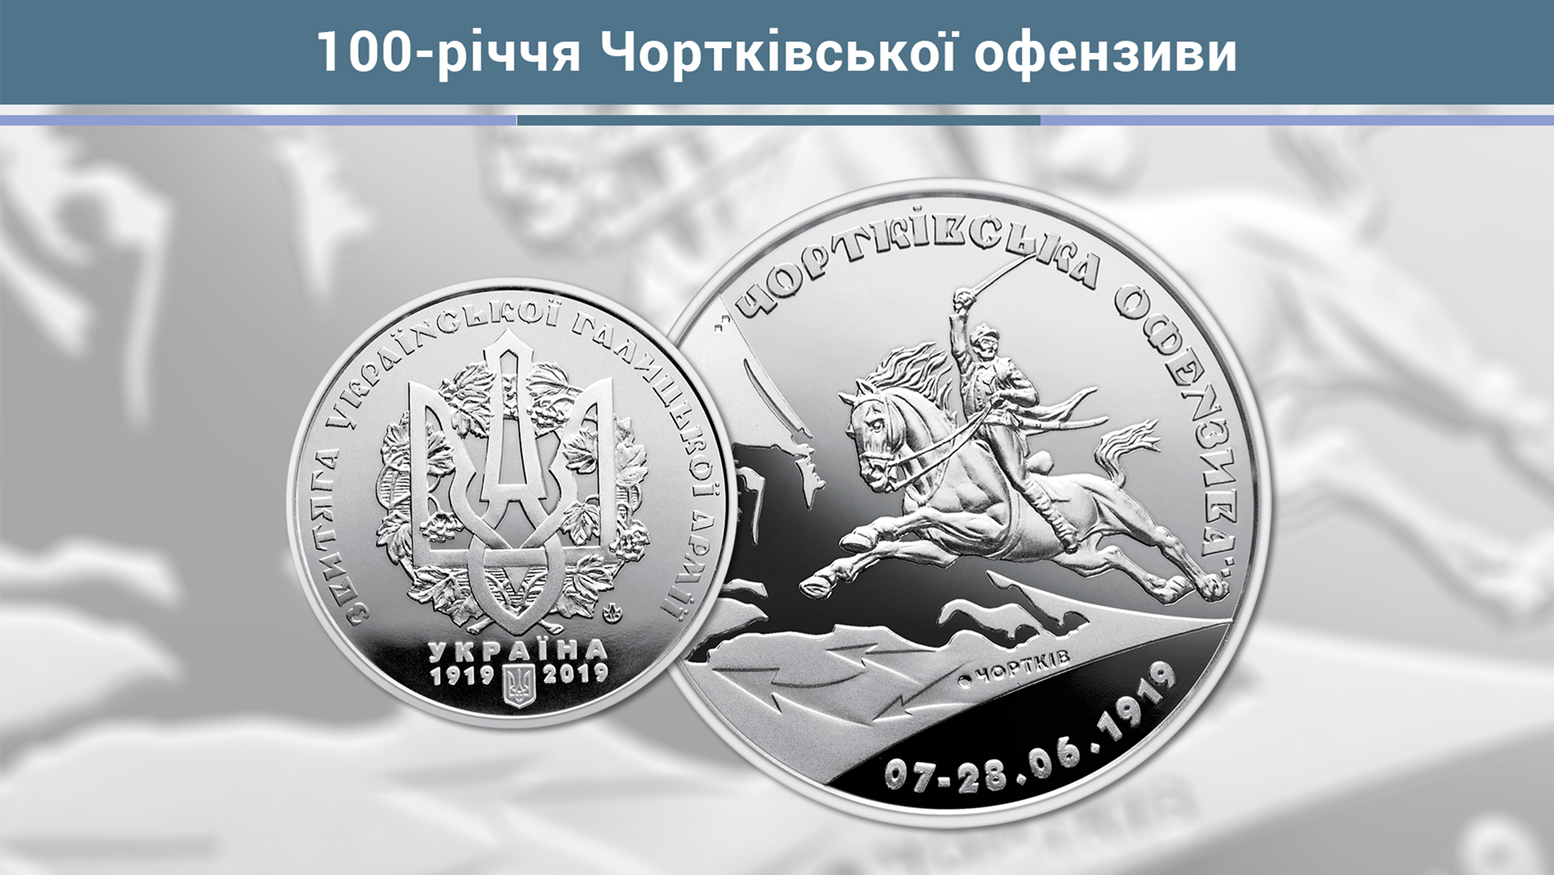 Про випуск пам’ятної медалі "100-річчя Чортківської офензиви"